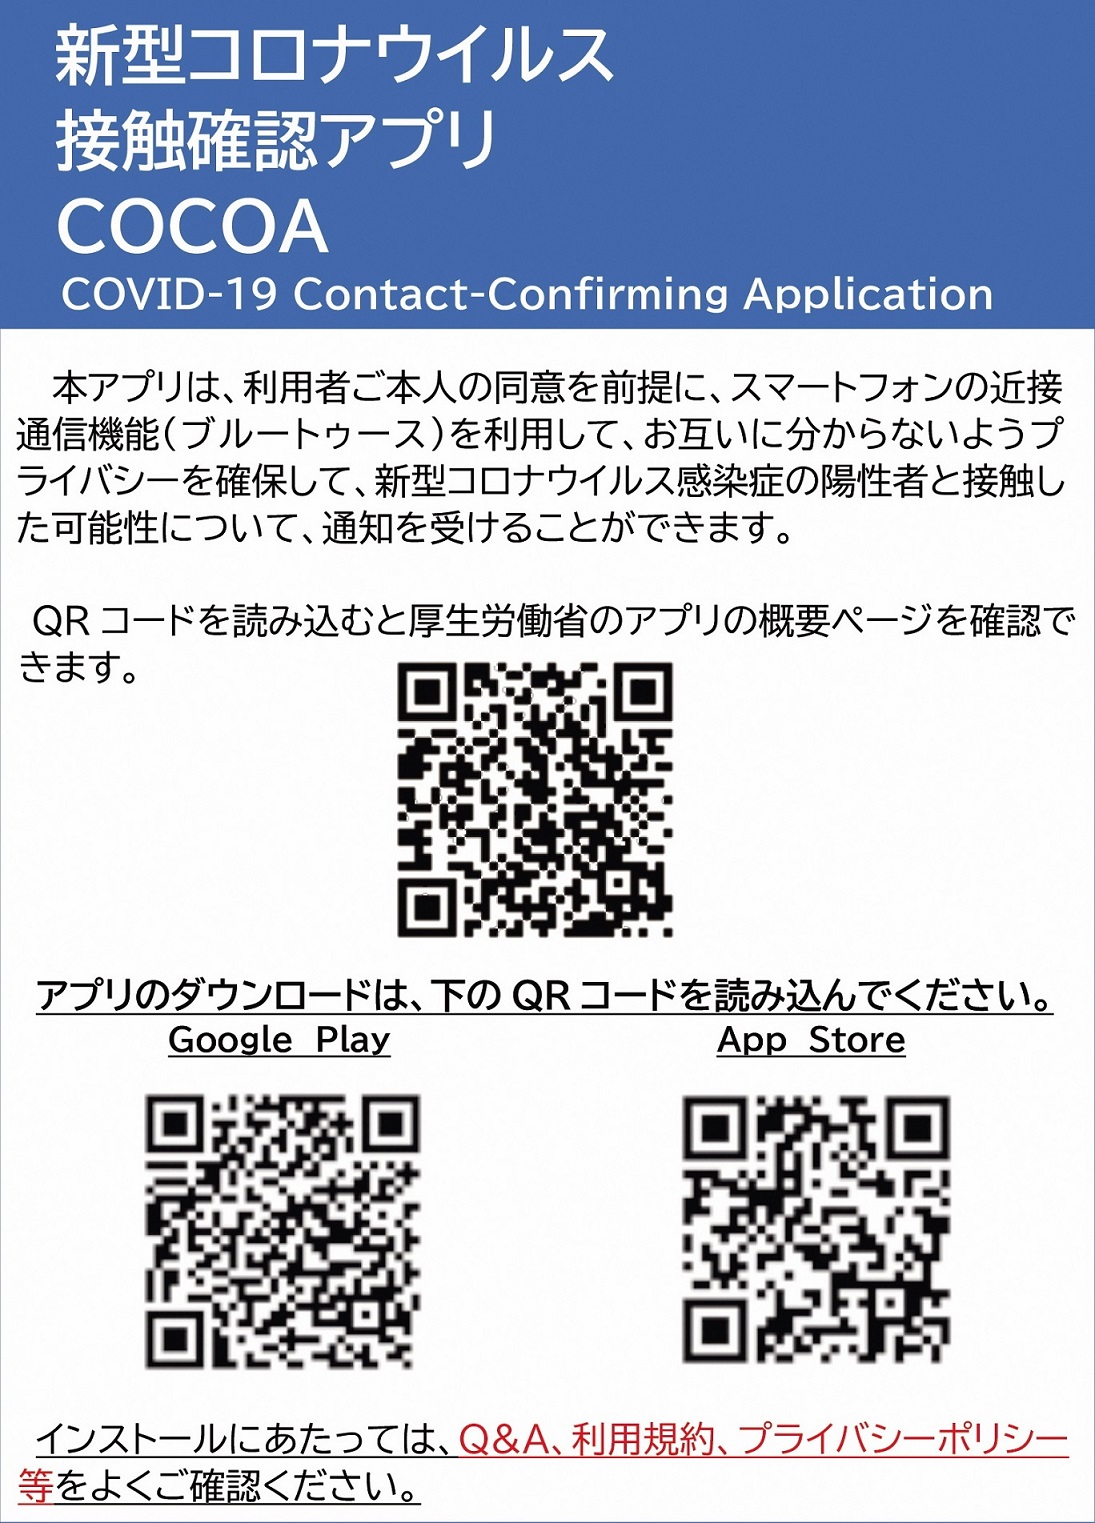 山中湖村役場 山中湖村役場新型コロナウイルス接触確認アプリ（COCOA)